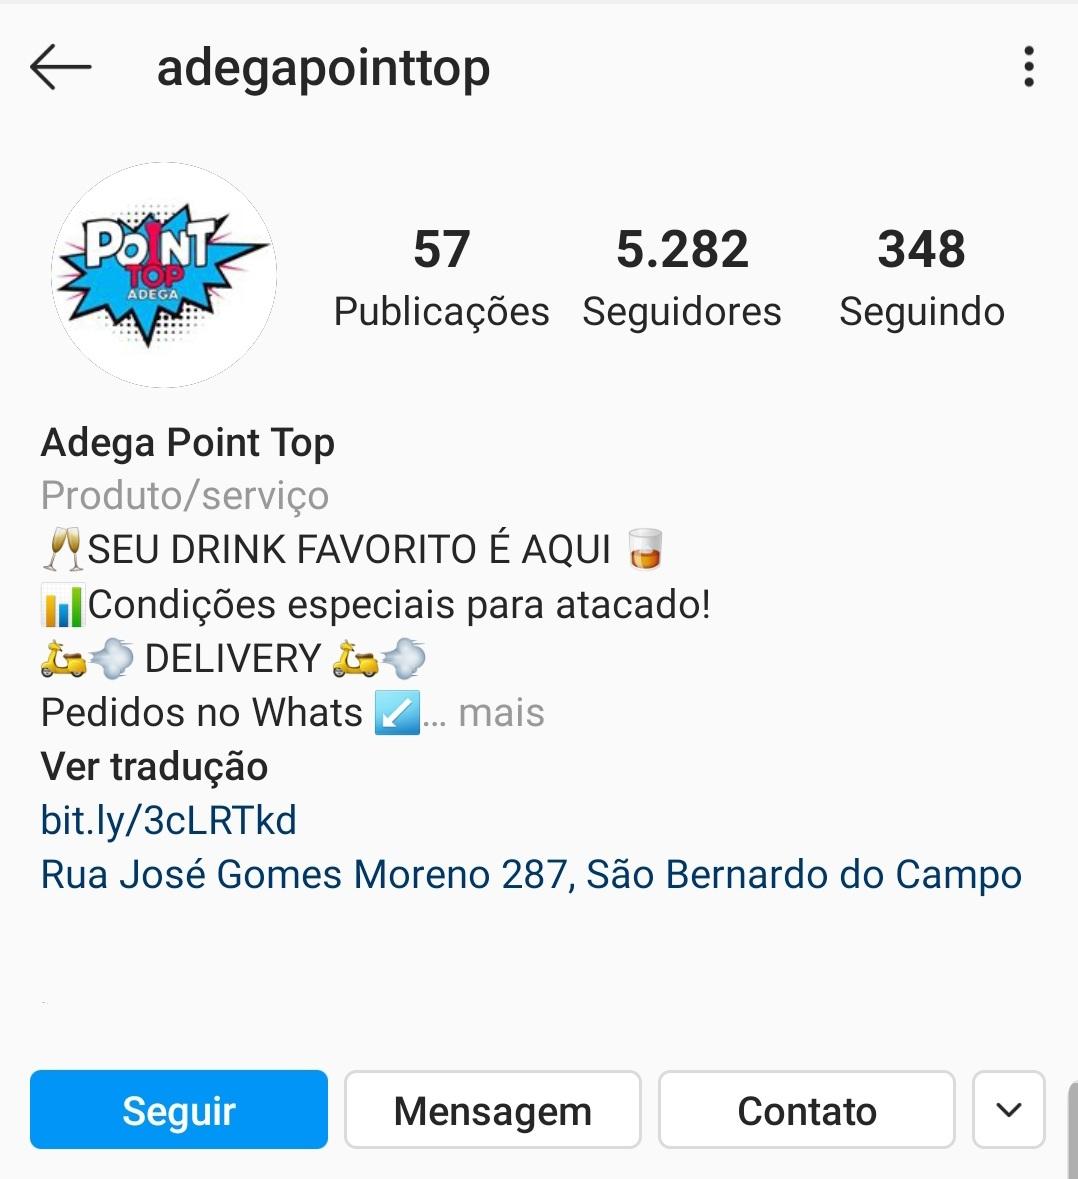 Imagem mostra a Adega Point Top no Instagram